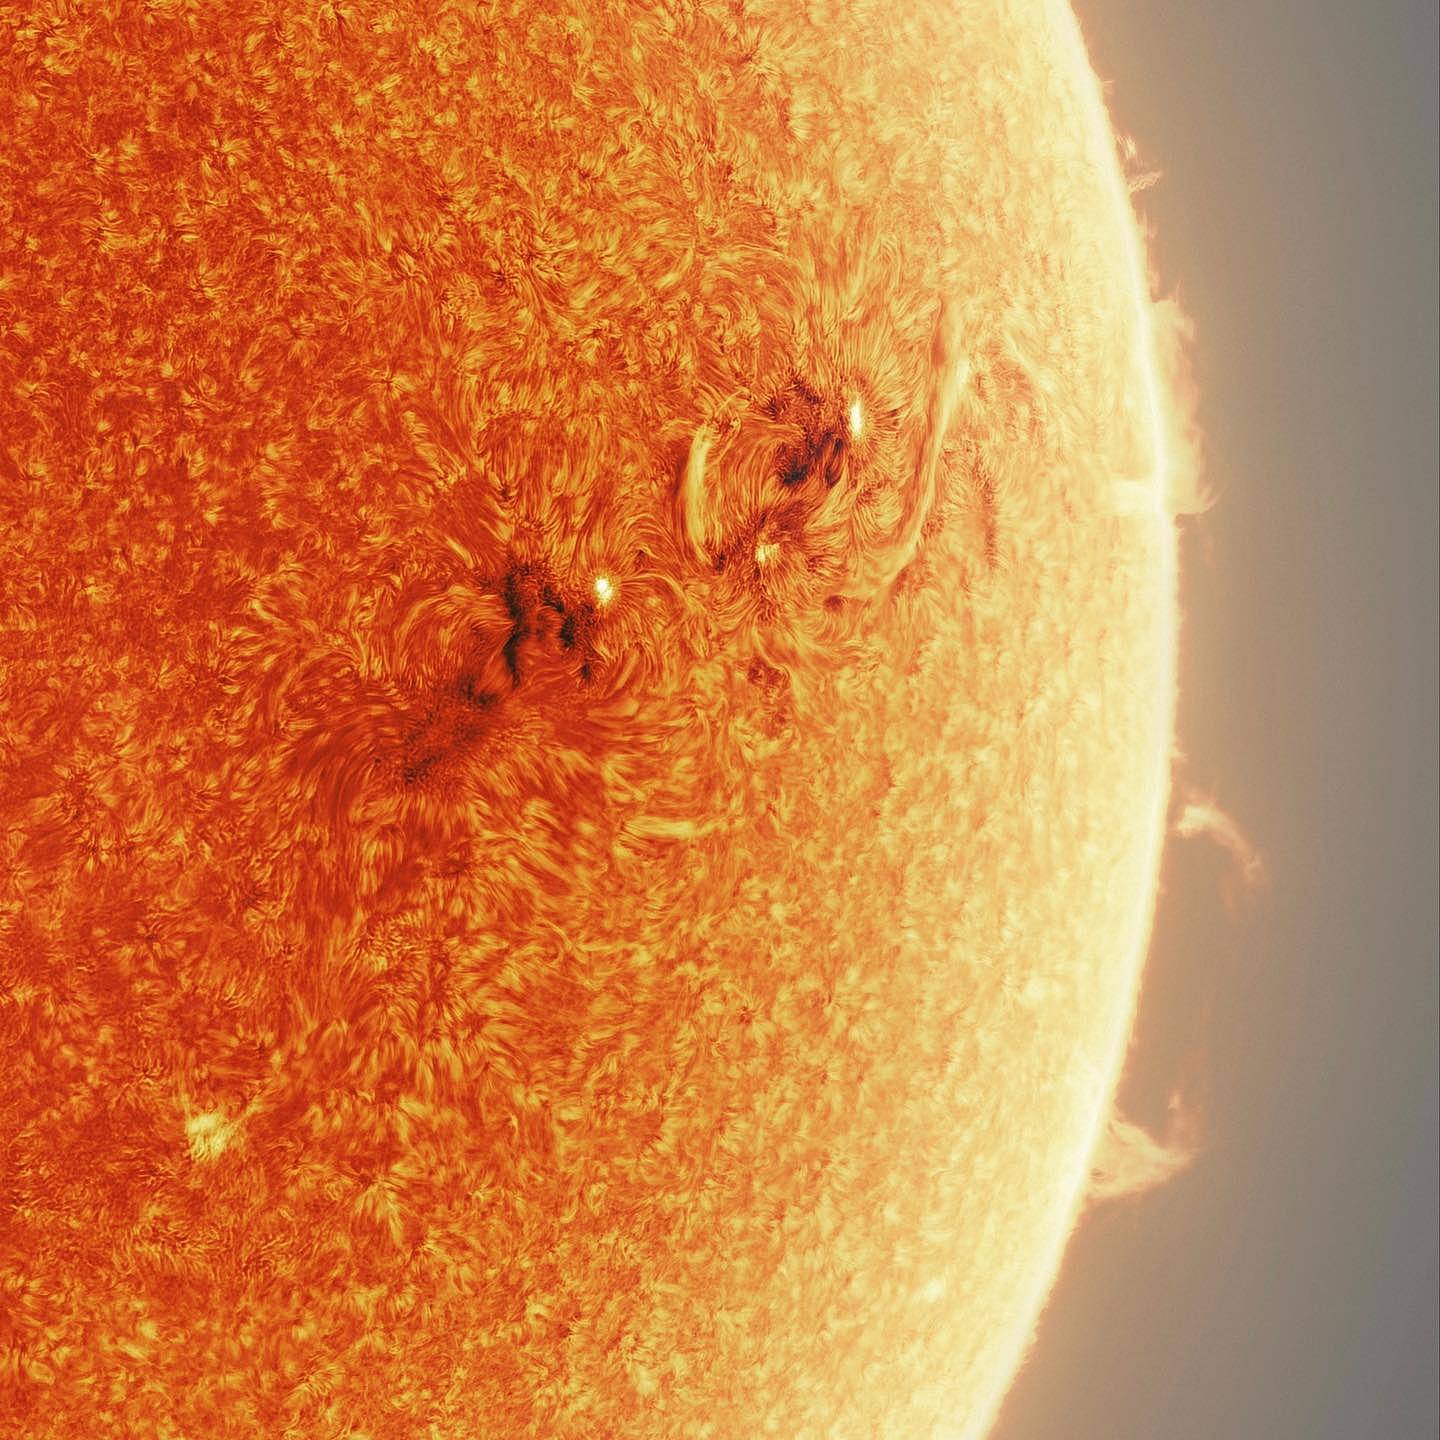 天文摄影家用15万张图制作出一张壮观的太阳照 - 1